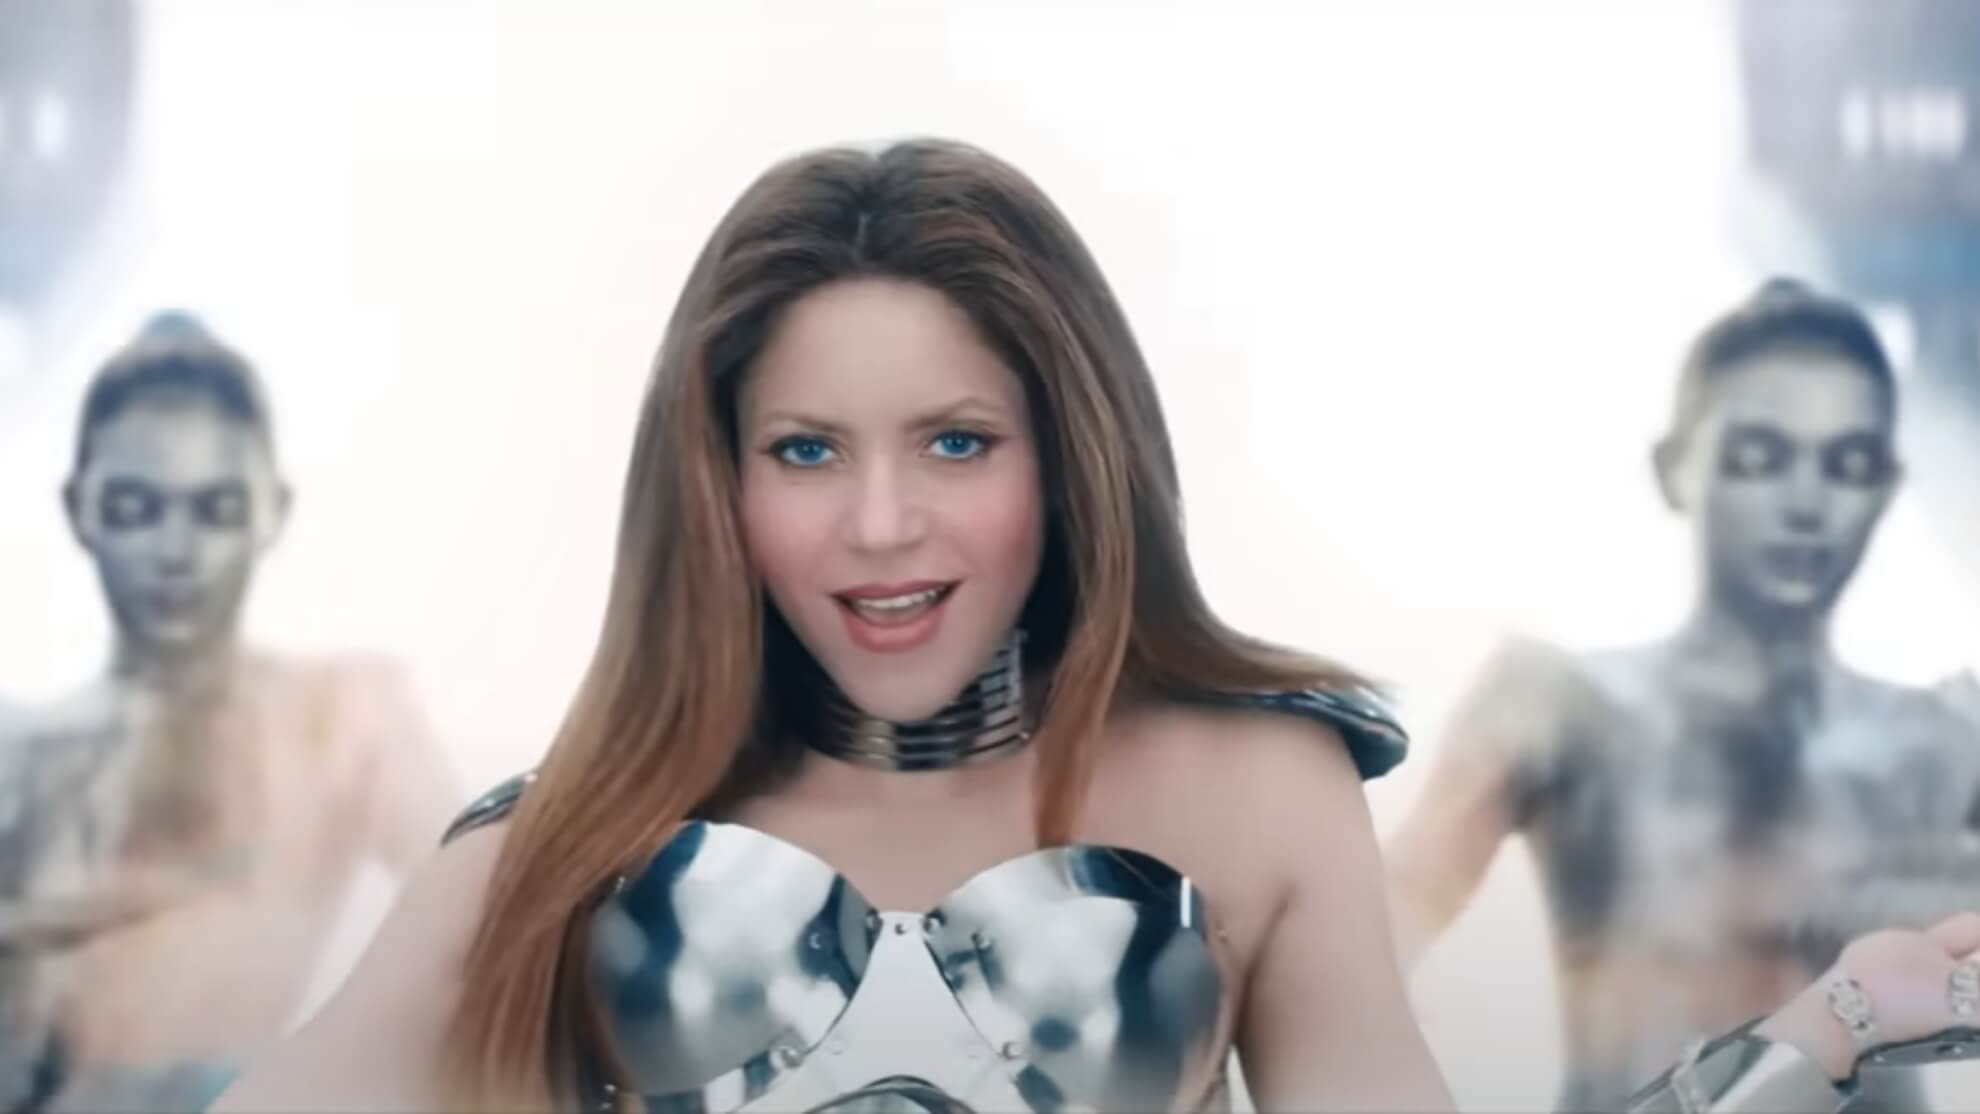 La Nuova Canzone Di Shakira Ottiene 7 Milioni Di Visualizzazioni Su Youtube I Fan Suggeriscono